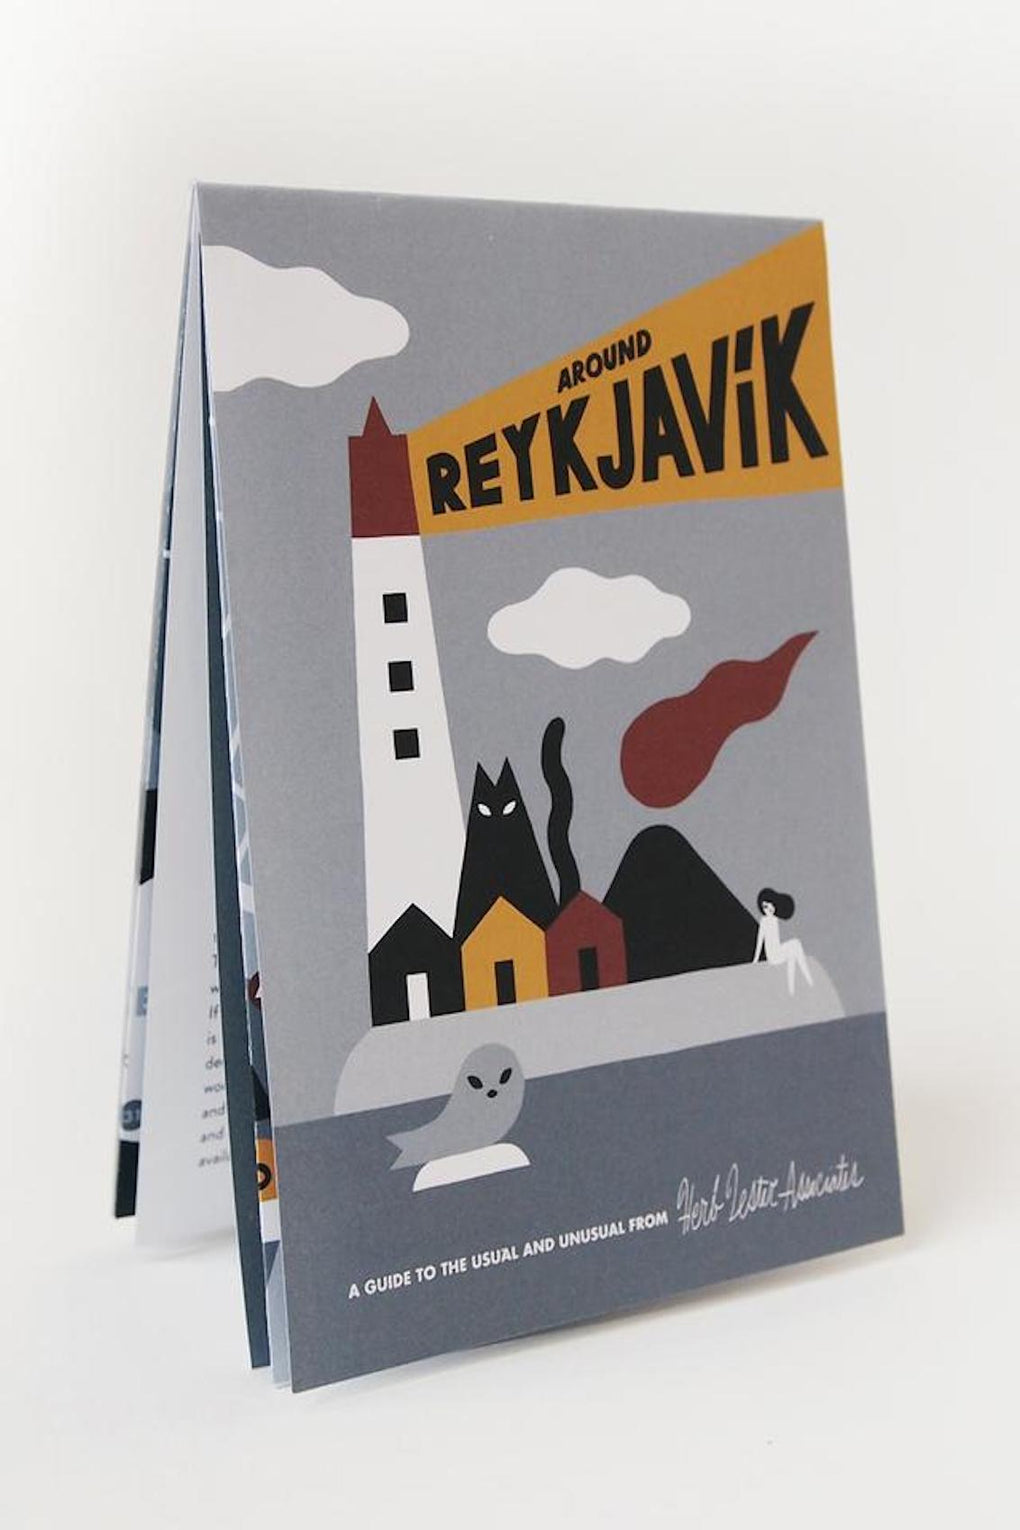 Herb Lester Guide-Herb Lester Reykjavik guide-Reykjavik map-Reykjavik travel guide-Idun-St. Paul